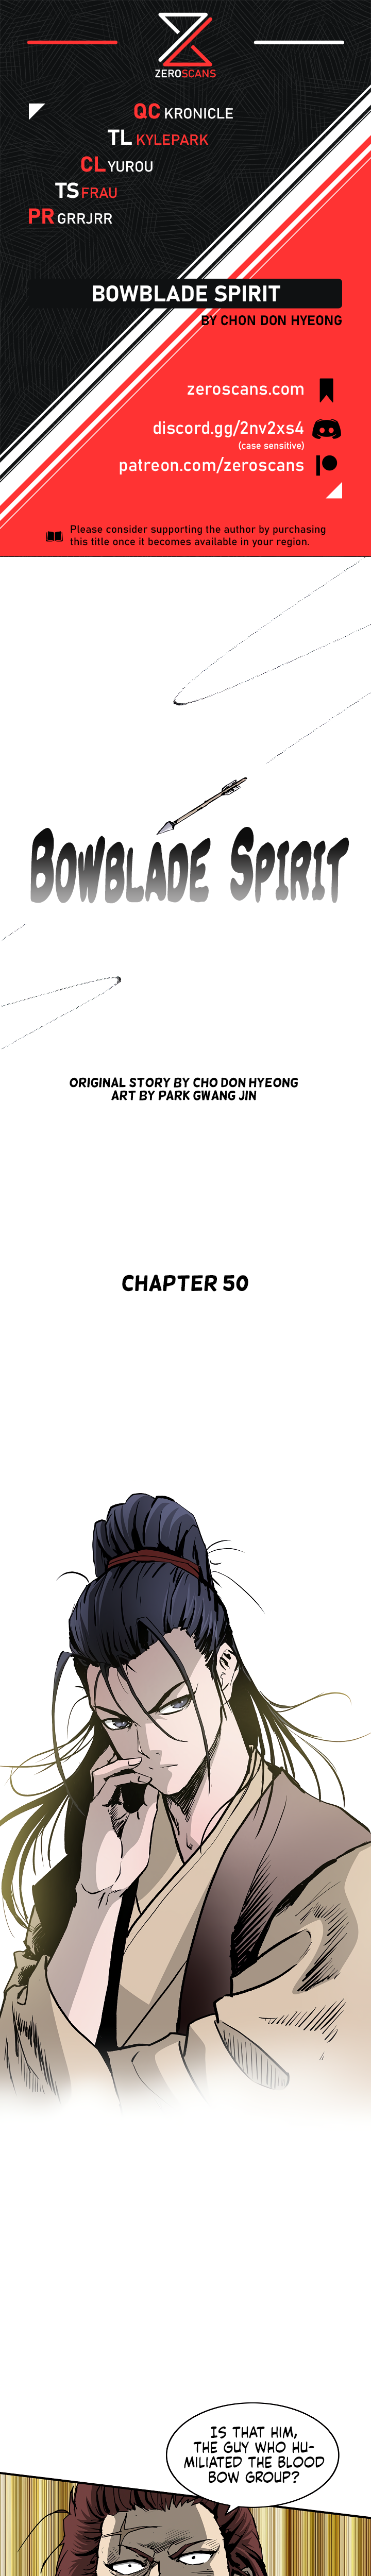 Bowblade Spirit - Chapter 3738 - Image 1